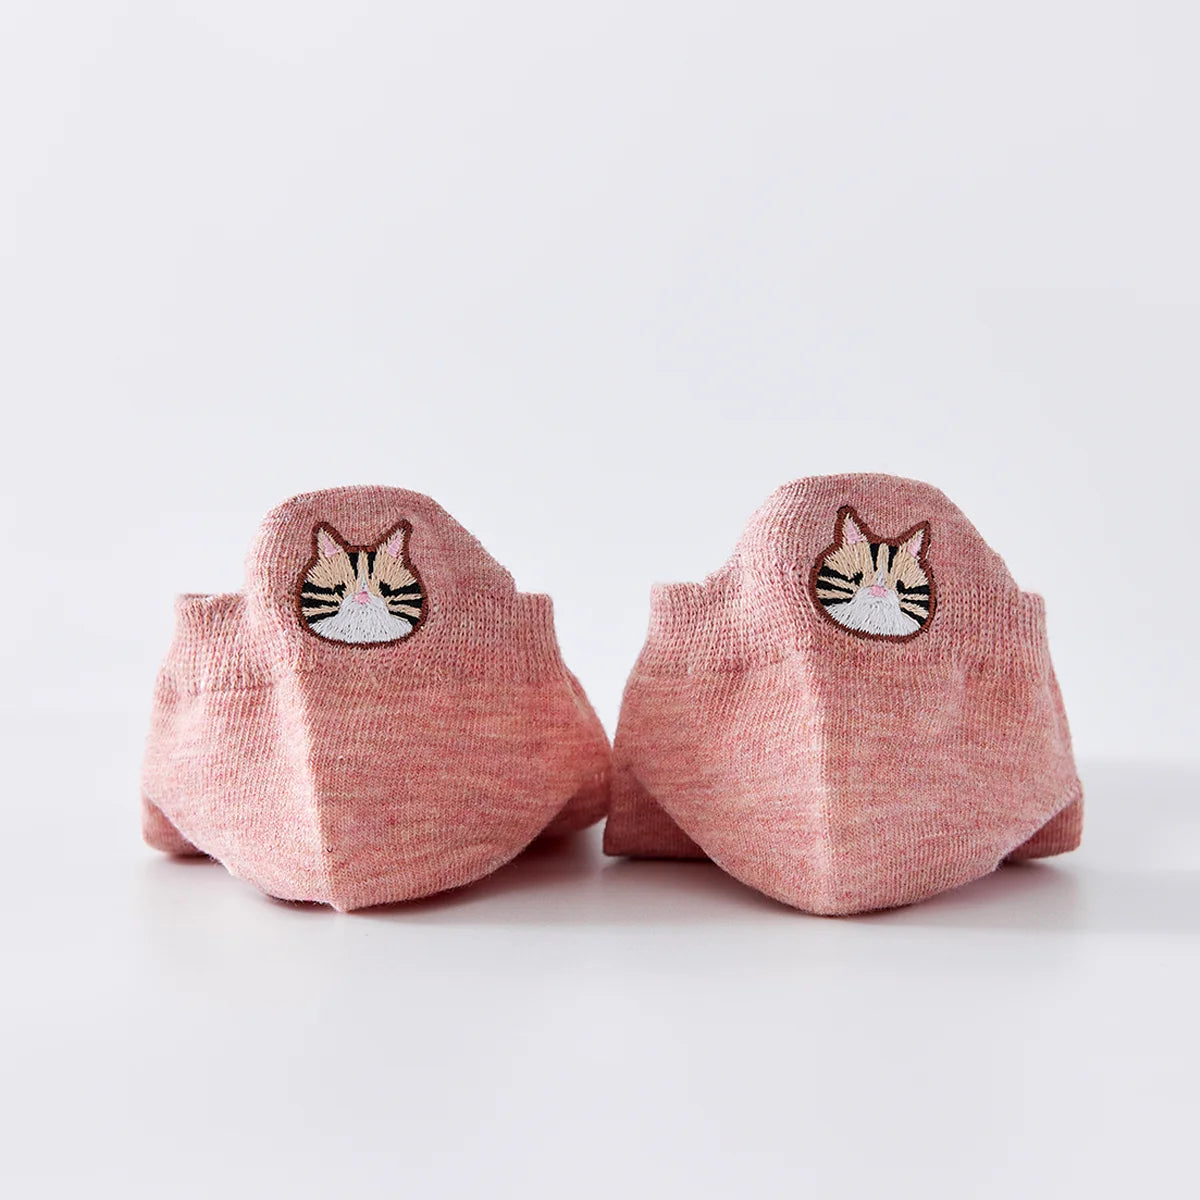 Chaussettes roses en coton à languette chat pour femme | Chaussettes confortables et élégantes | Idéales pour le quotidien ou les occasions spéciales | Disponibles en plusieurs couleurs et tailles